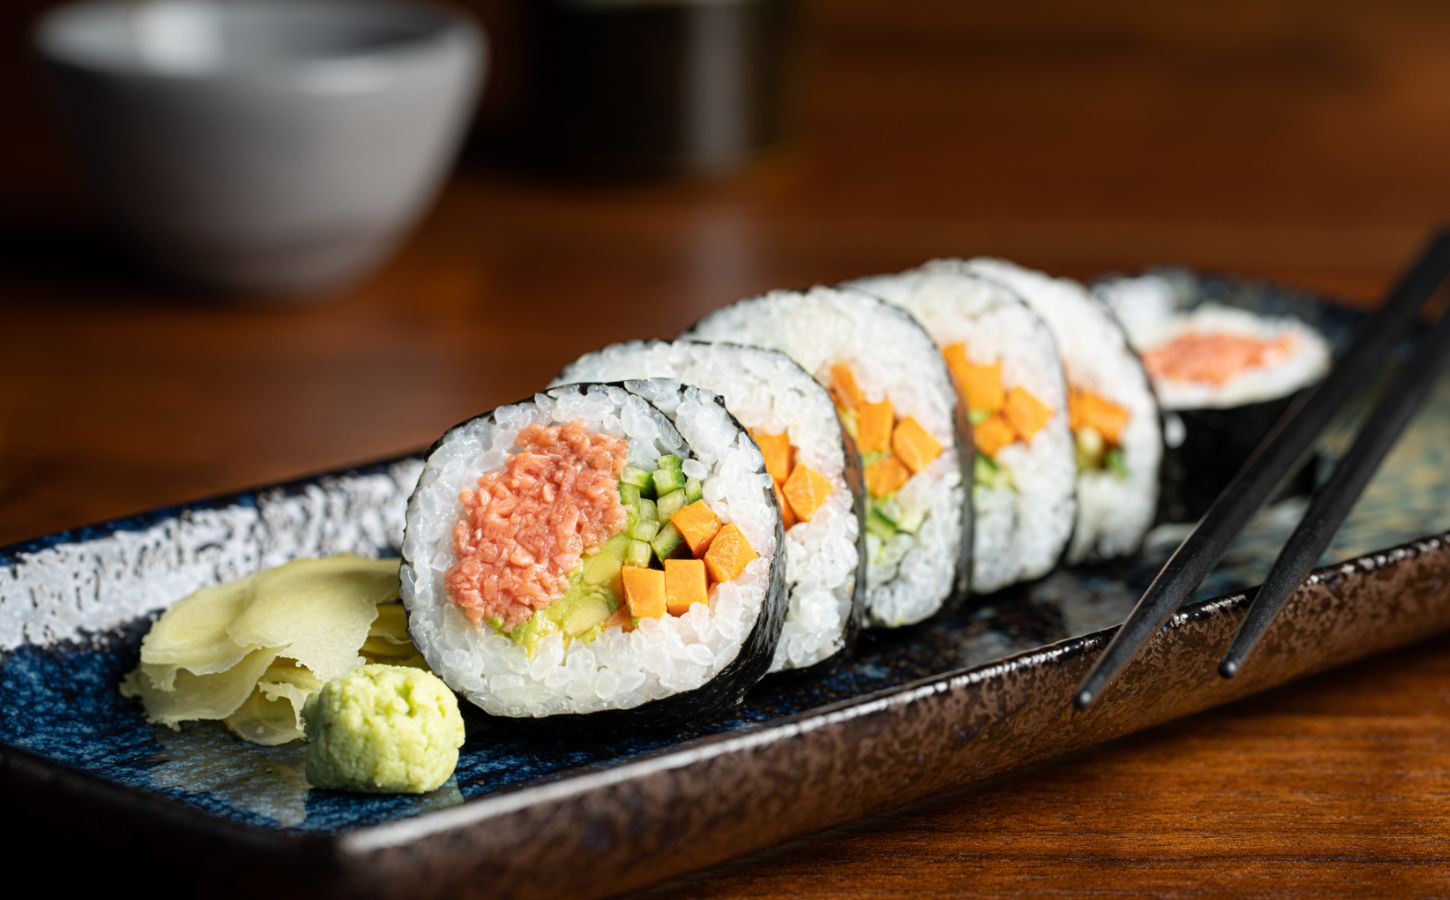 Cultured tuna made by BlueNalu in sushi rolls